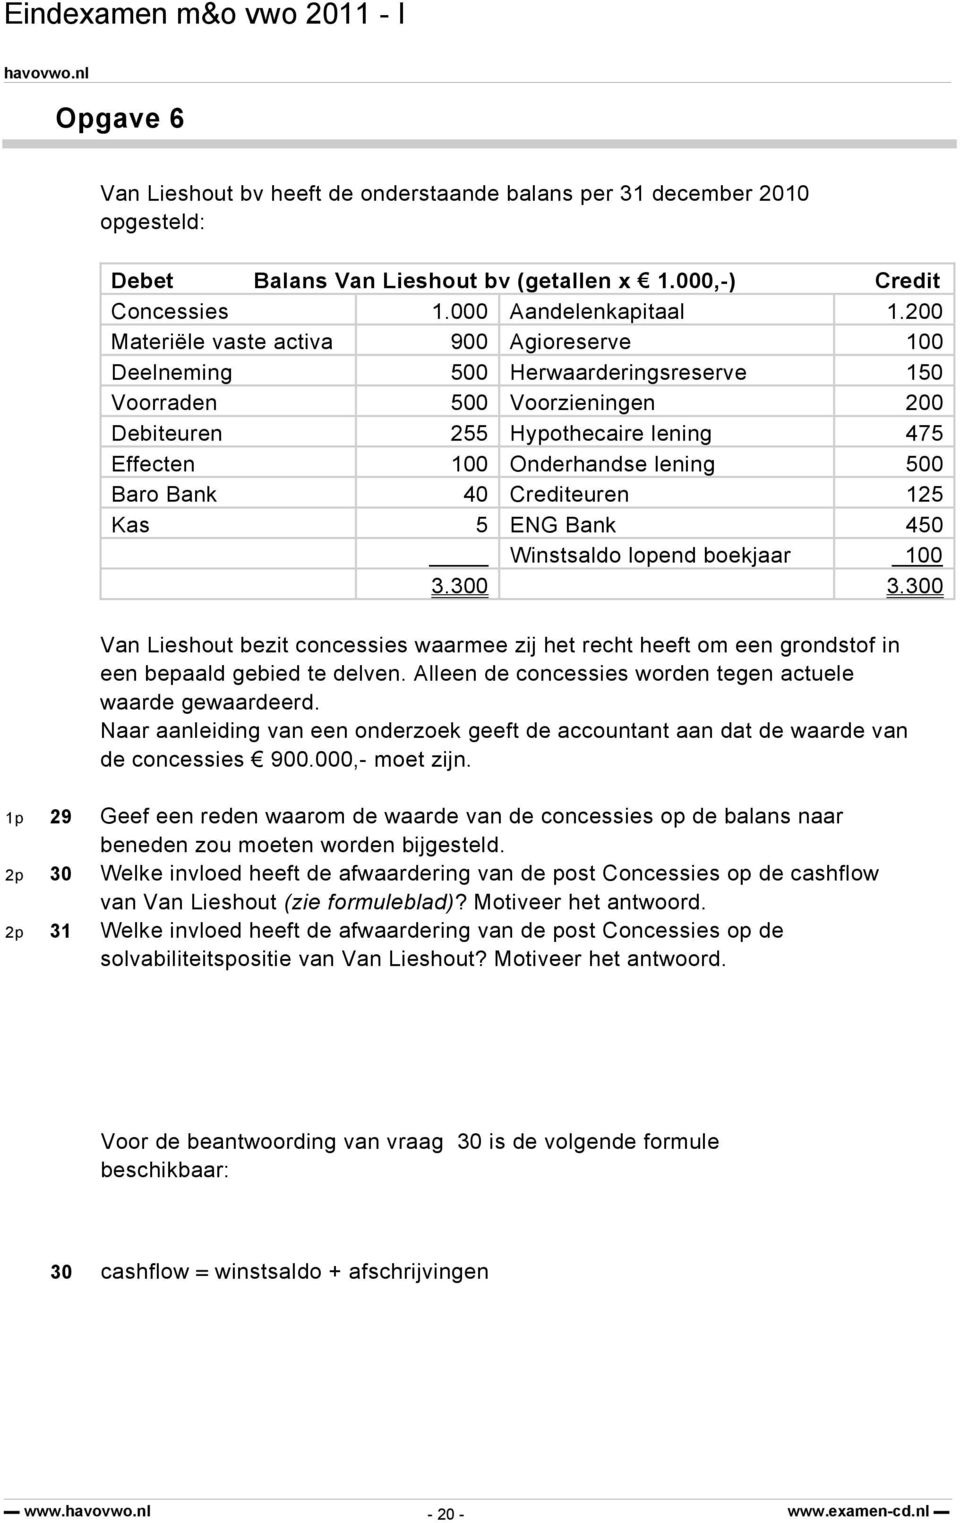 Bank 40 Crediteuren 125 Kas 5 ENG Bank 450 Winstsaldo lopend boekjaar 100 3.300 3.300 Van Lieshout bezit concessies waarmee zij het recht heeft om een grondstof in een bepaald gebied te delven.